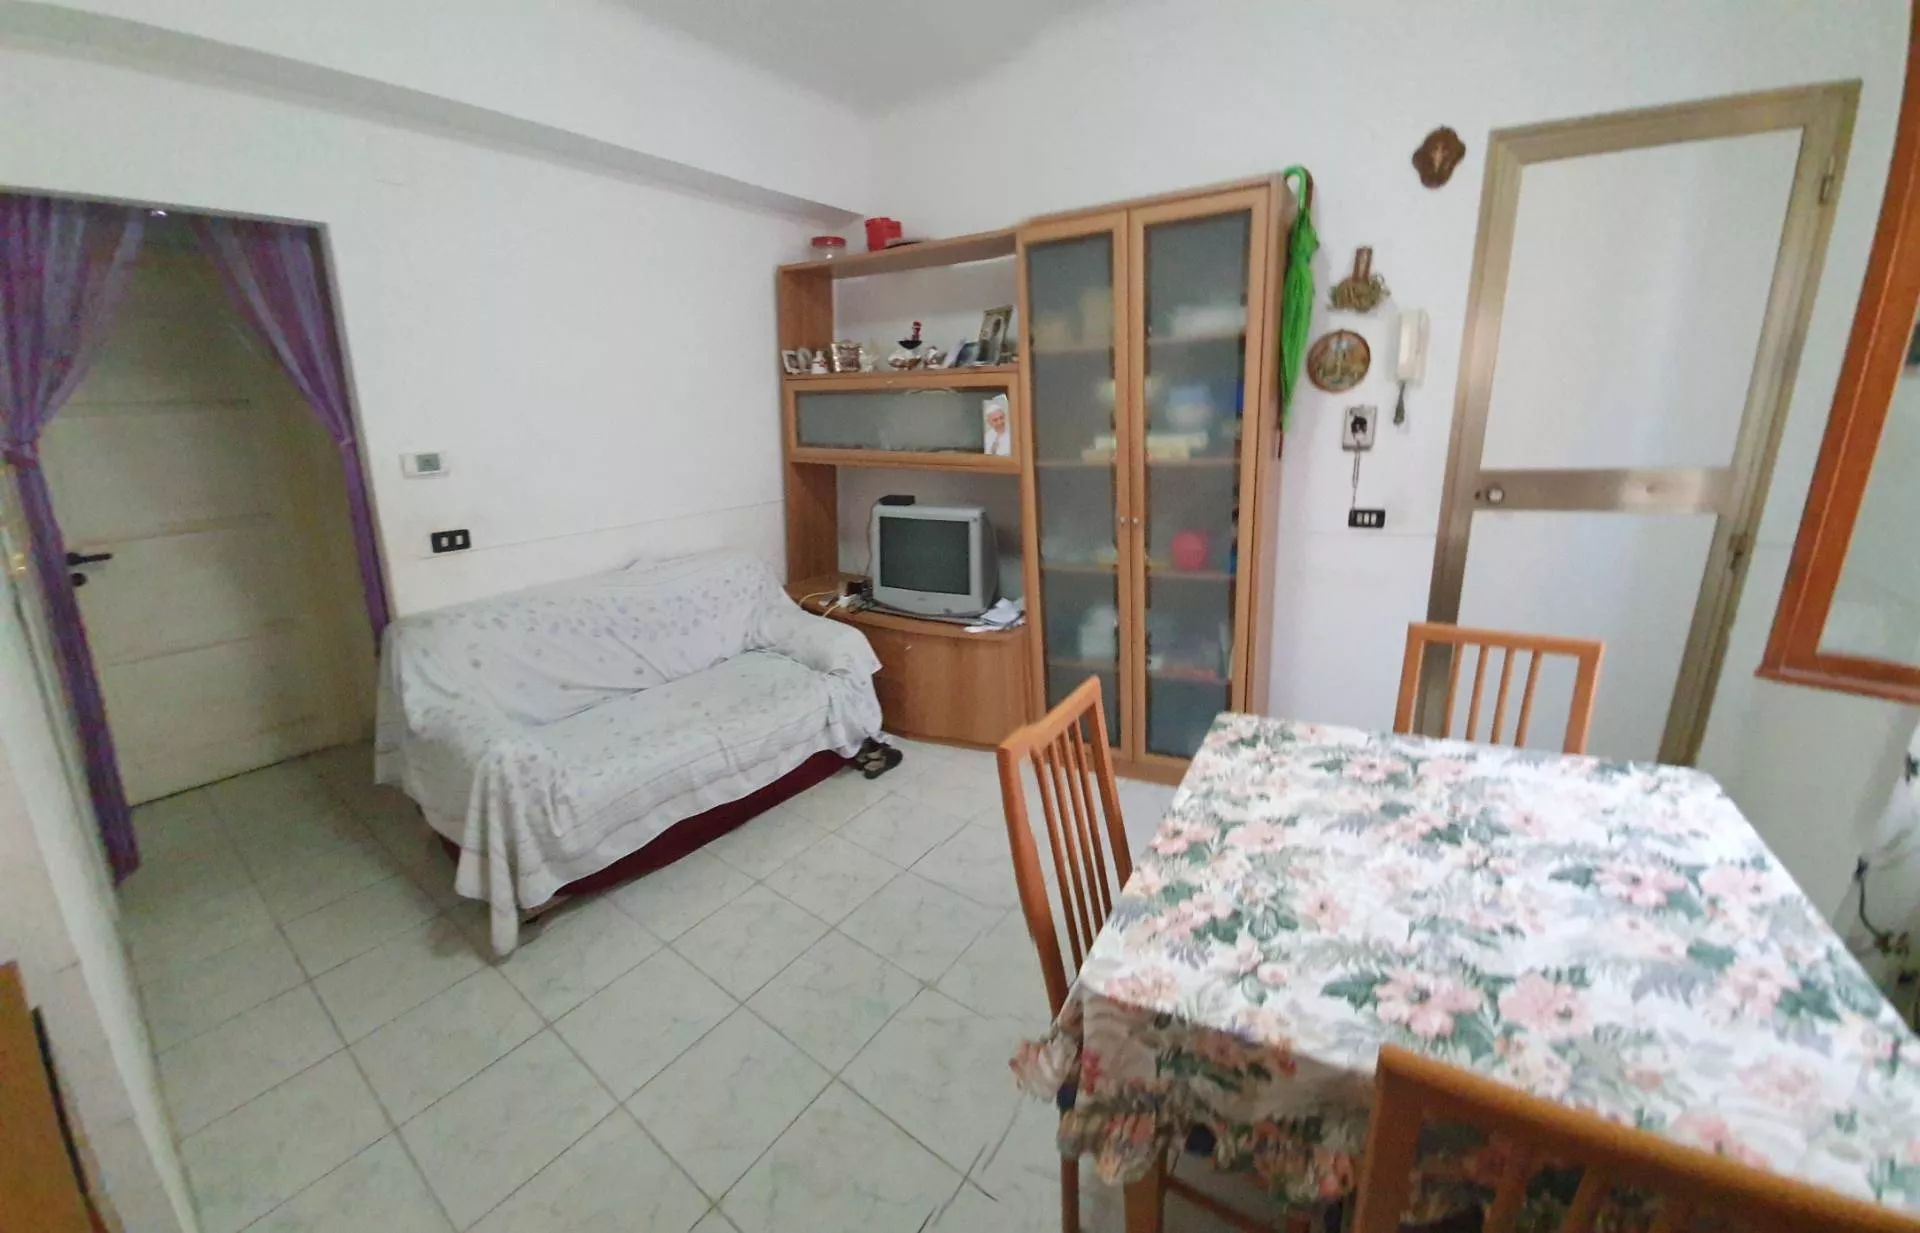 Immagine per Appartamento in vendita a San Benedetto del Tronto manara